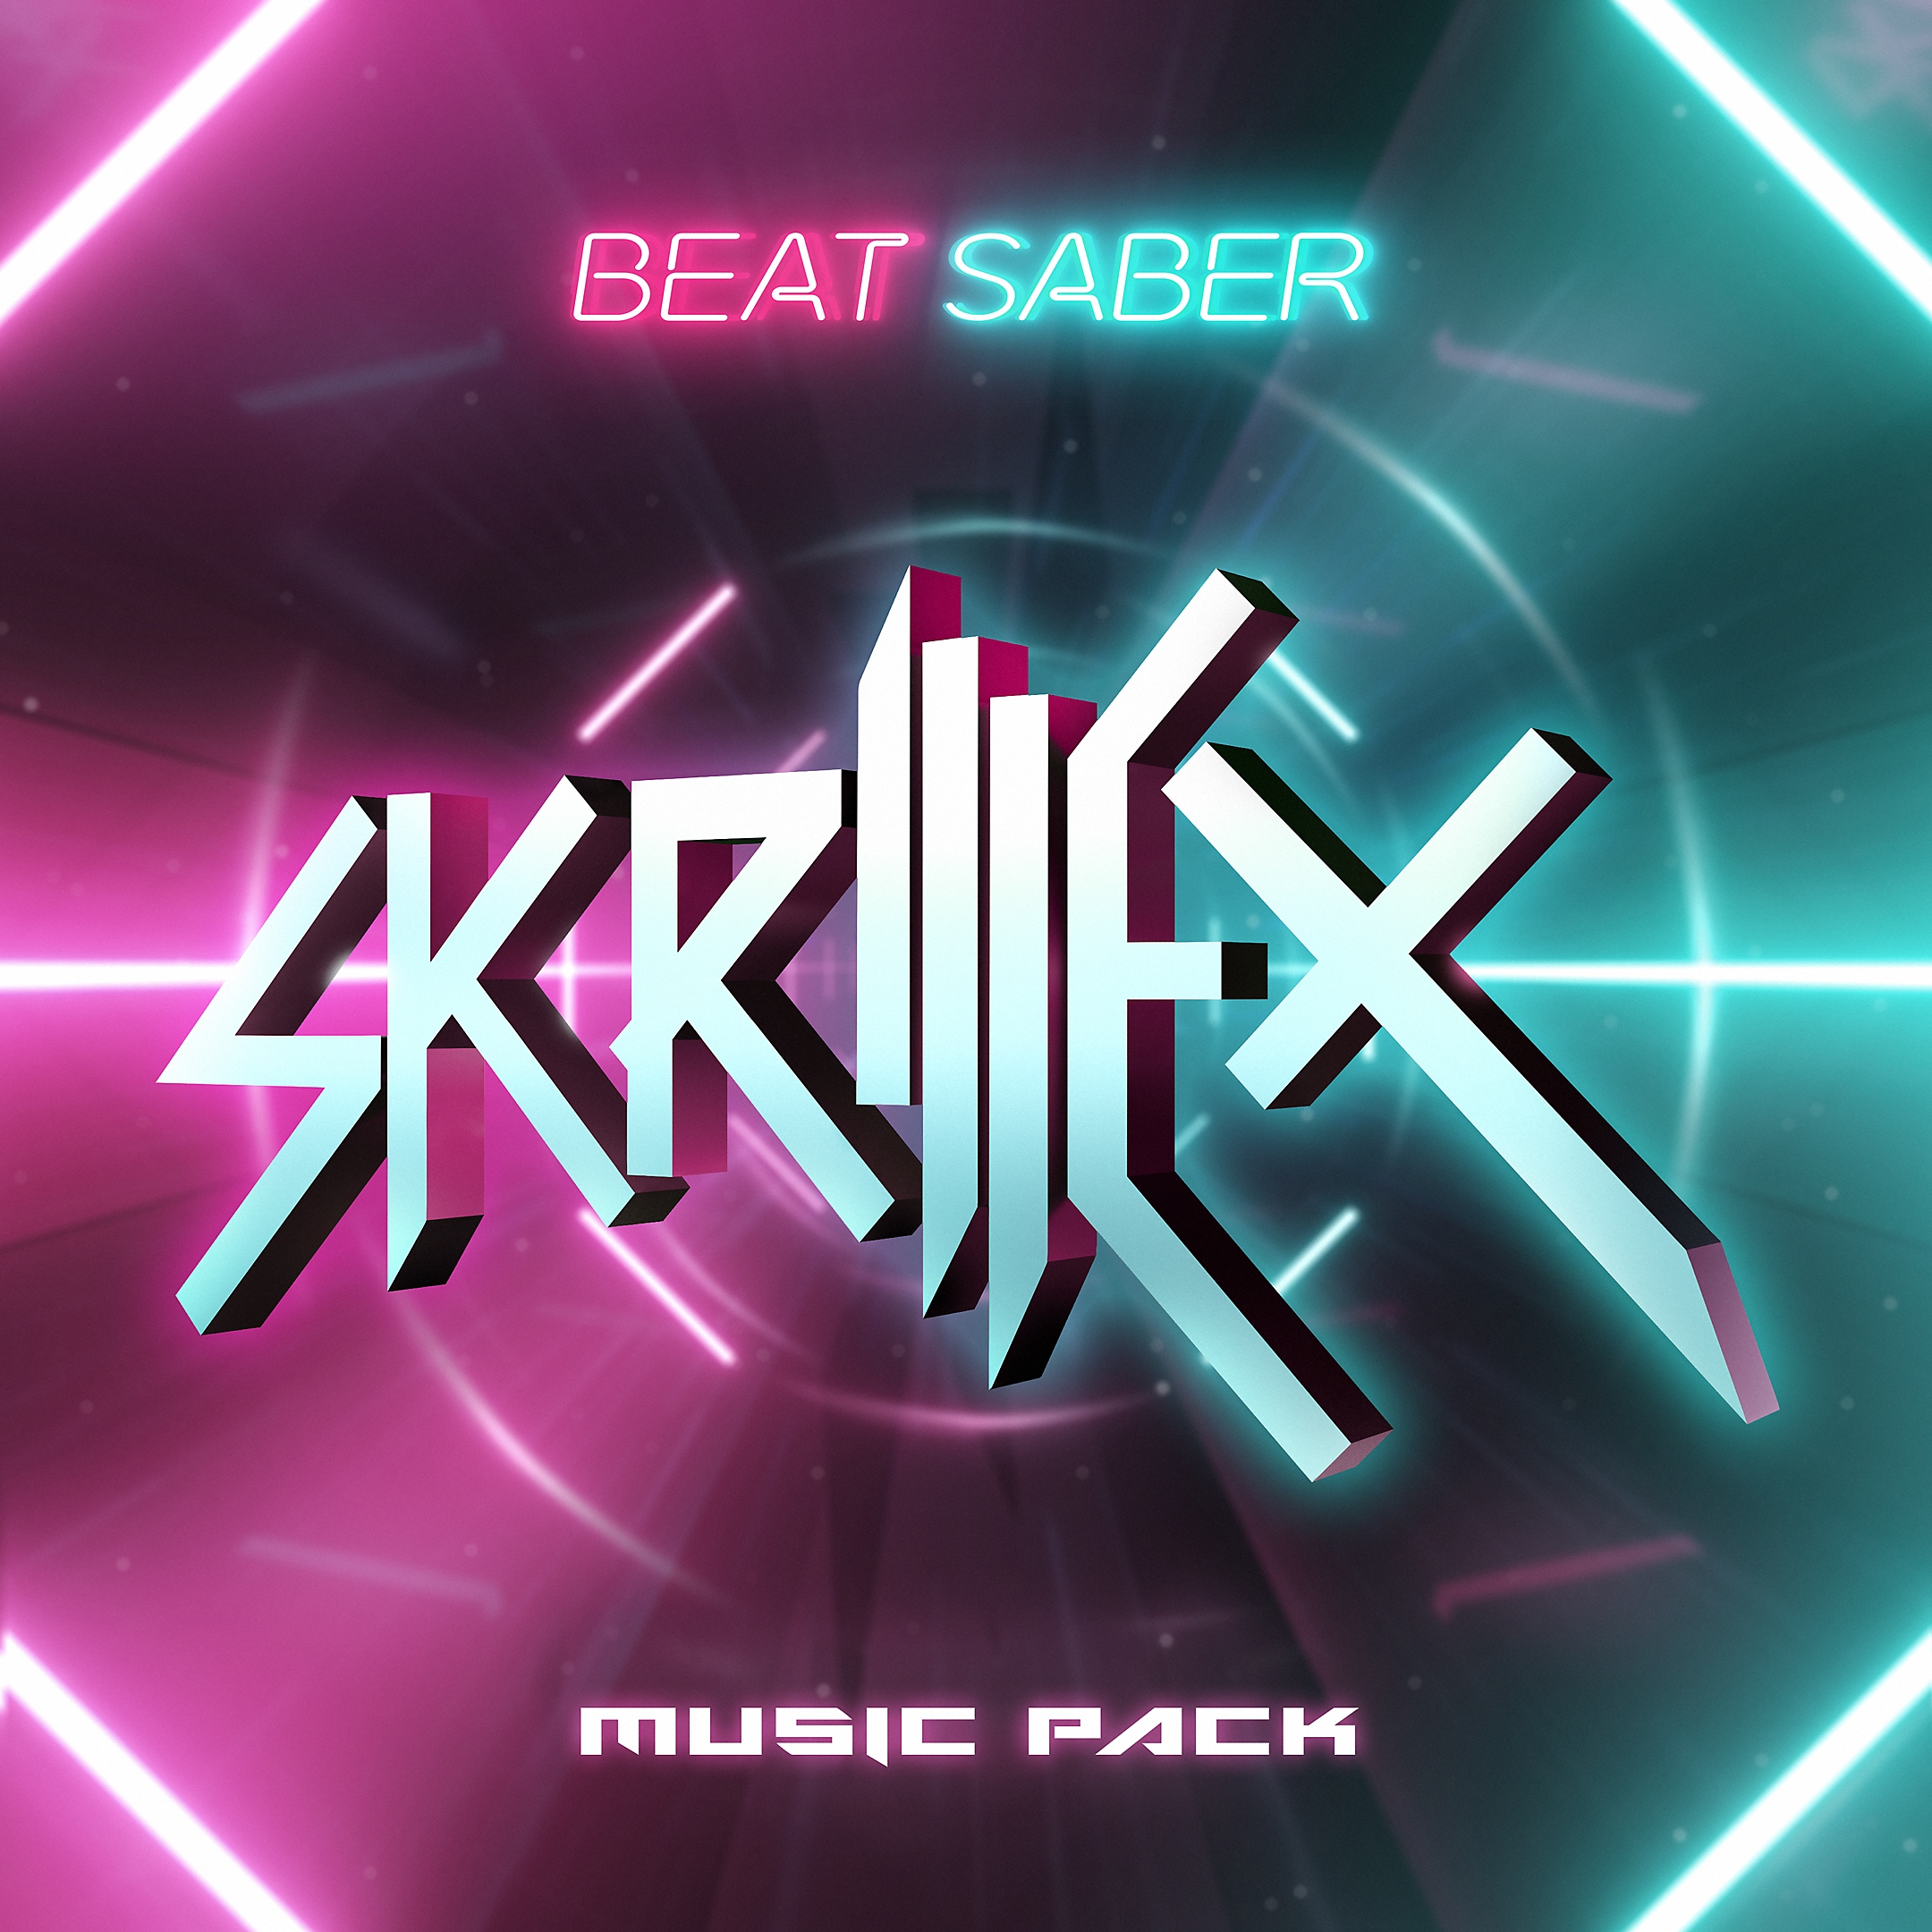 Музичний набір Skrillex для Beat Saber